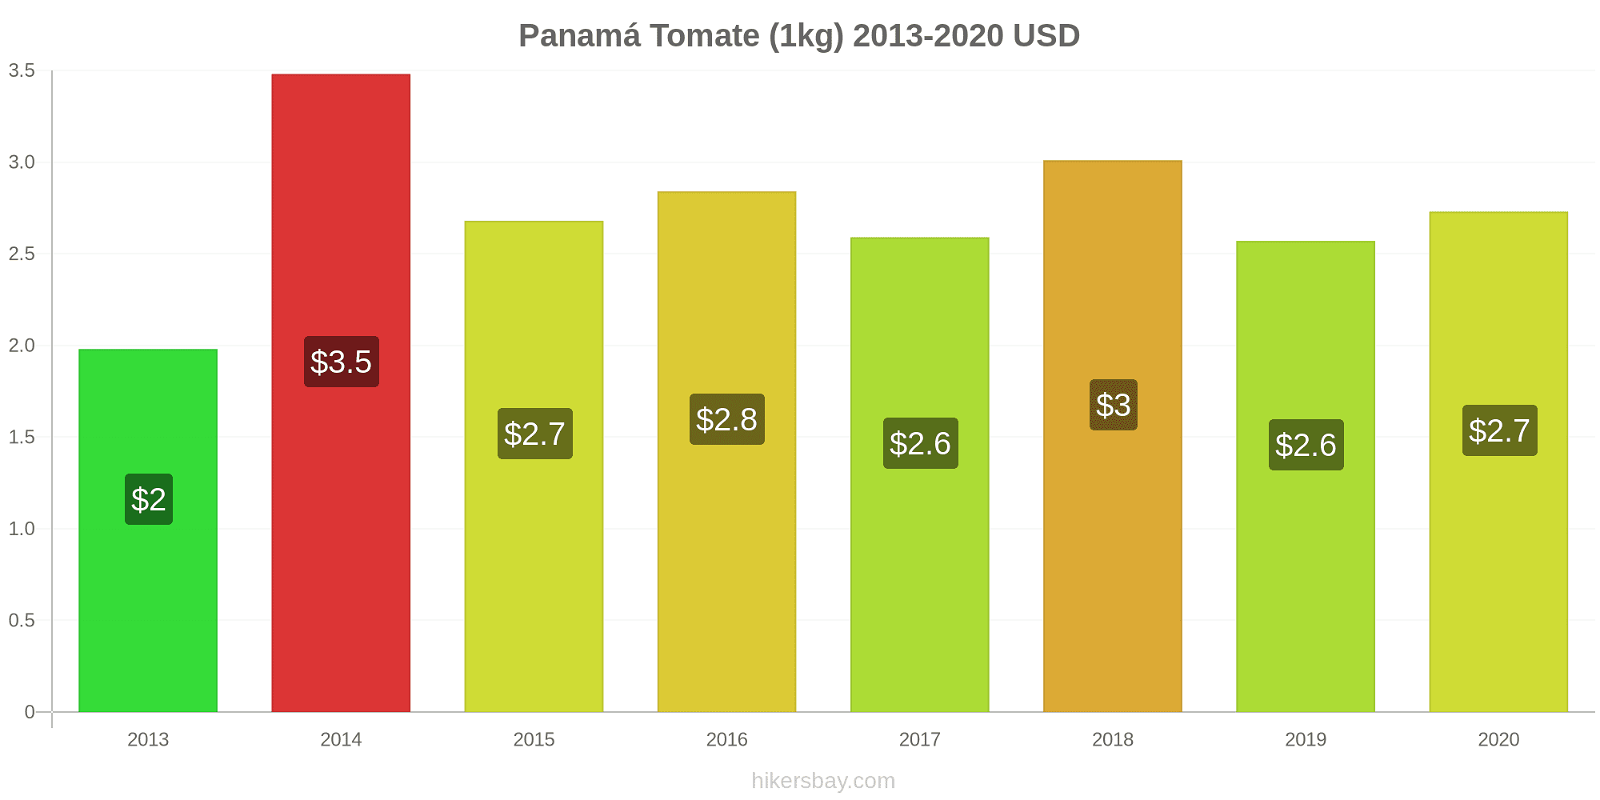 Panamá cambios de precios Tomate (1kg) hikersbay.com